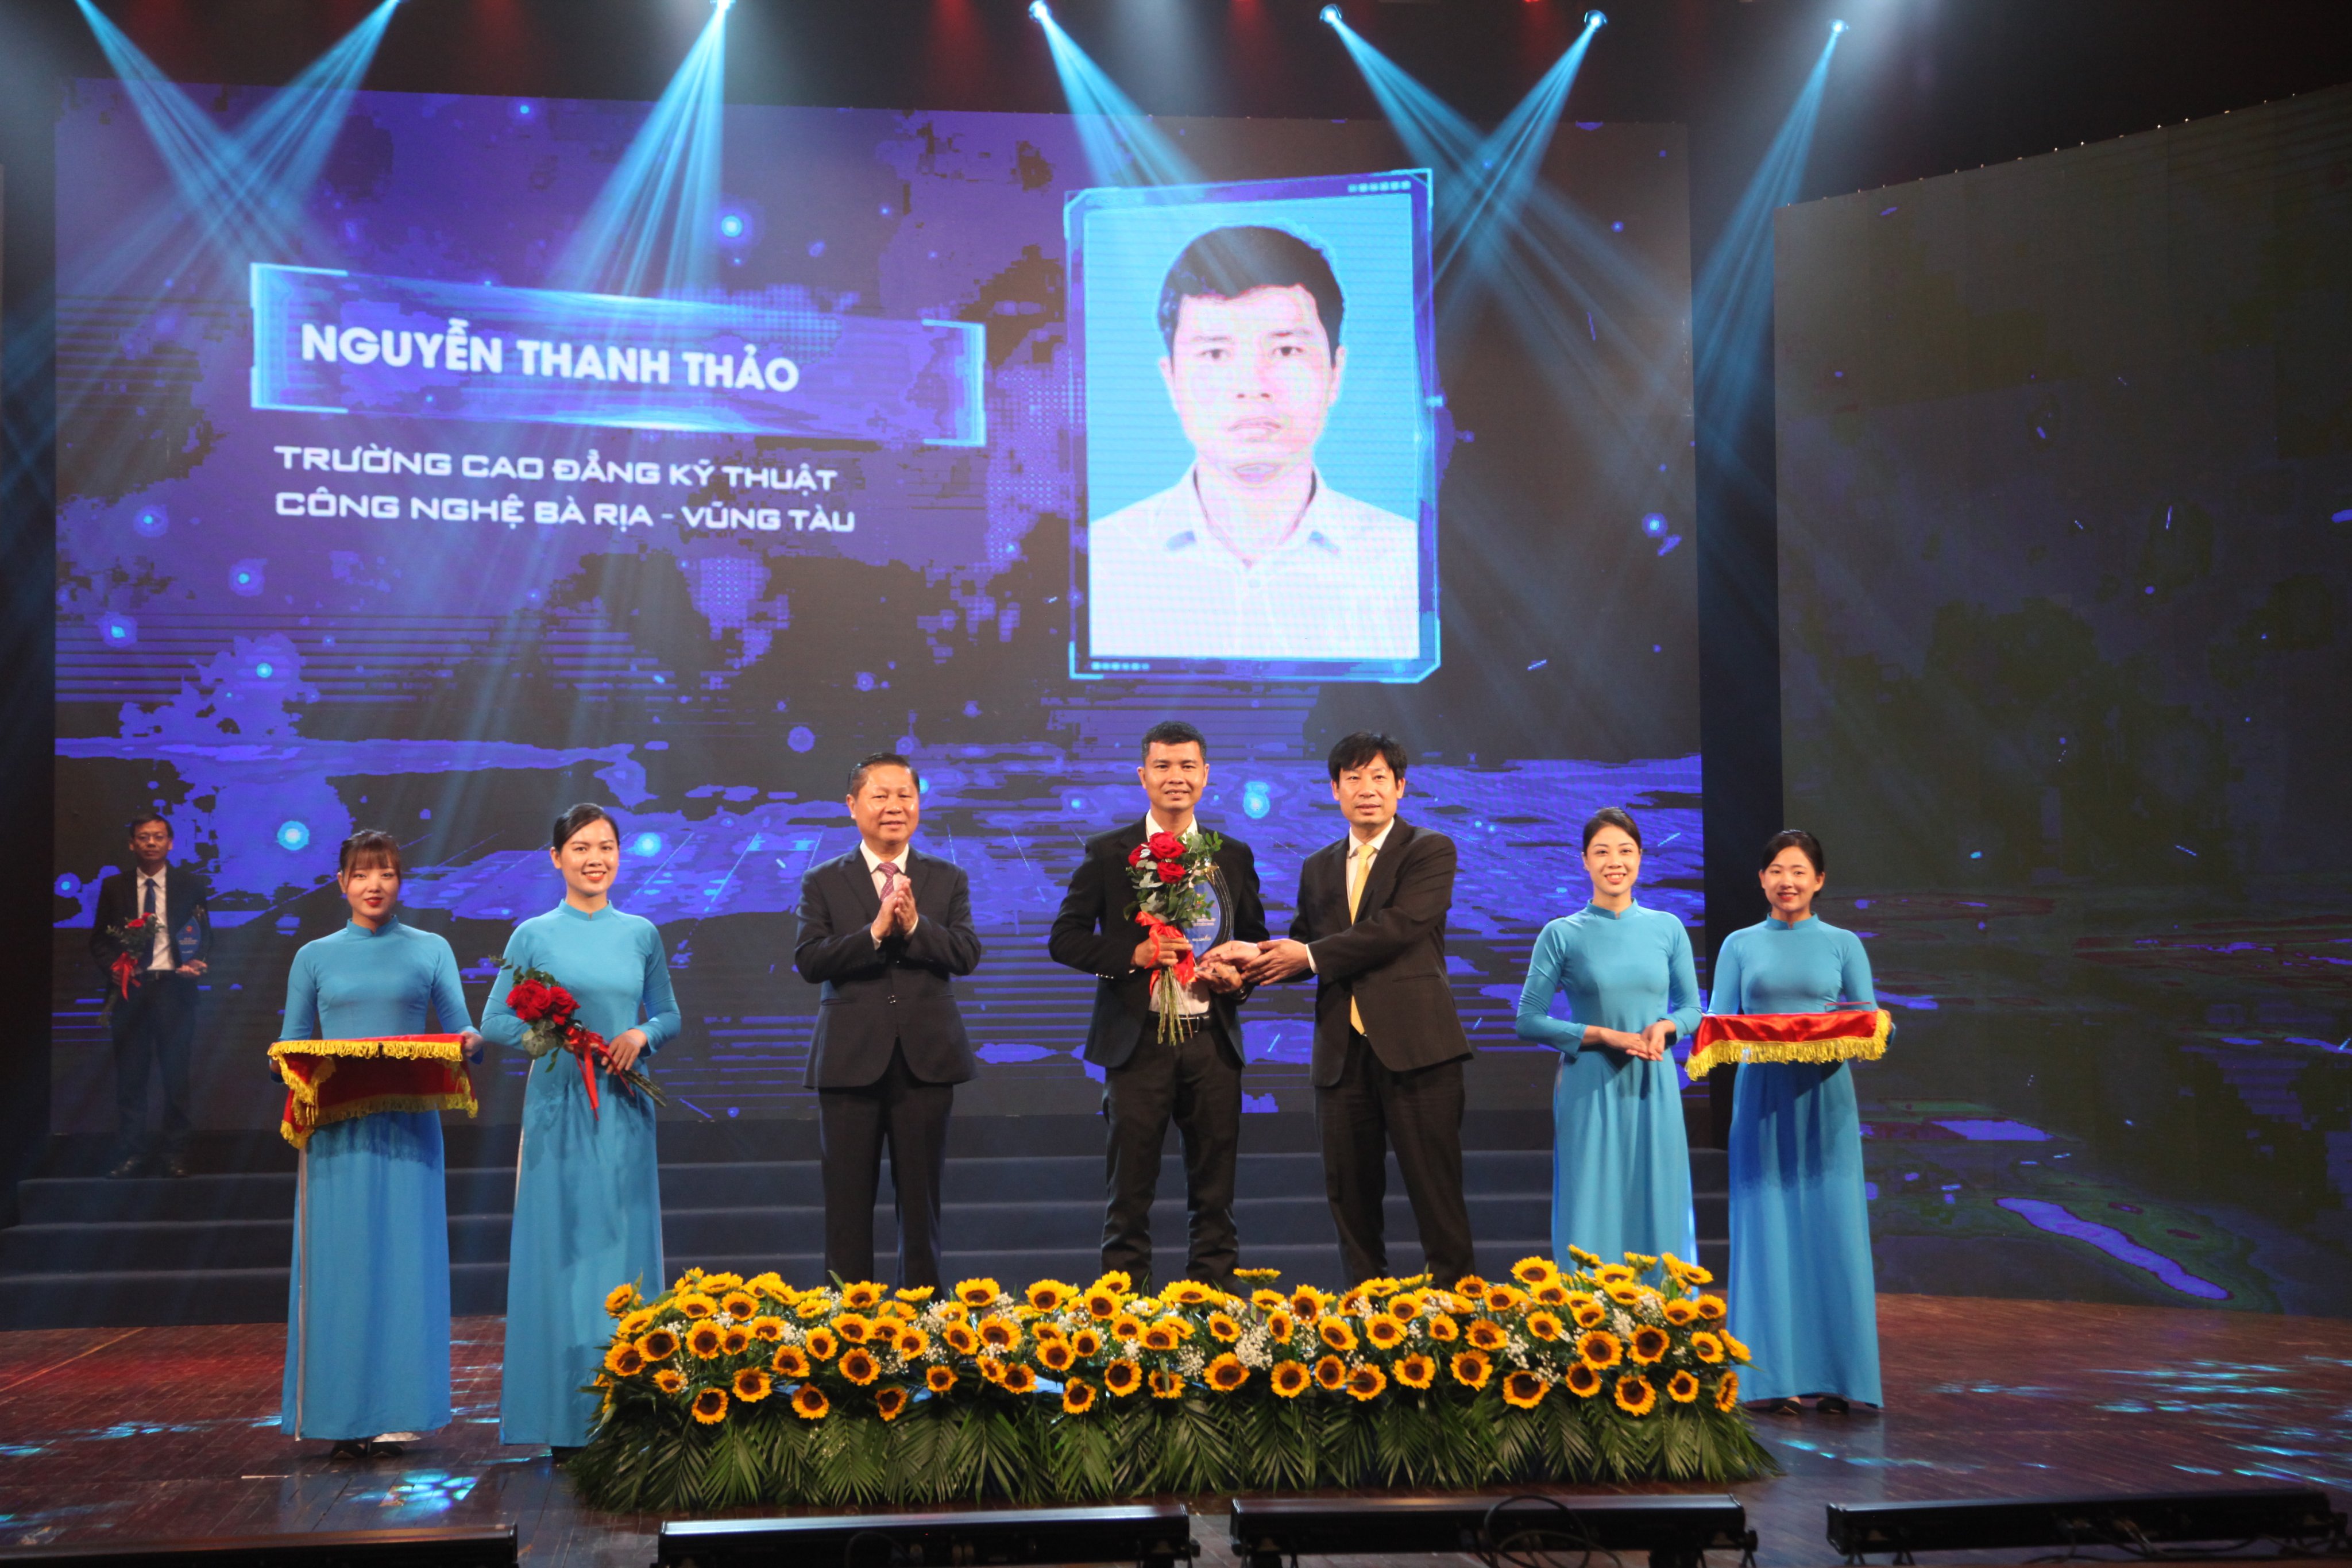 Thạc sĩ Nguyễn Thanh Thảo, giảng viên khoa Cơ khí của trường Cao đẳng Kỹ thuật Công nghệ Bà Rịa – Vũng Tàu được tôn vinh là nhà giáo giáo dục nghề nghiệp tiêu biểu.